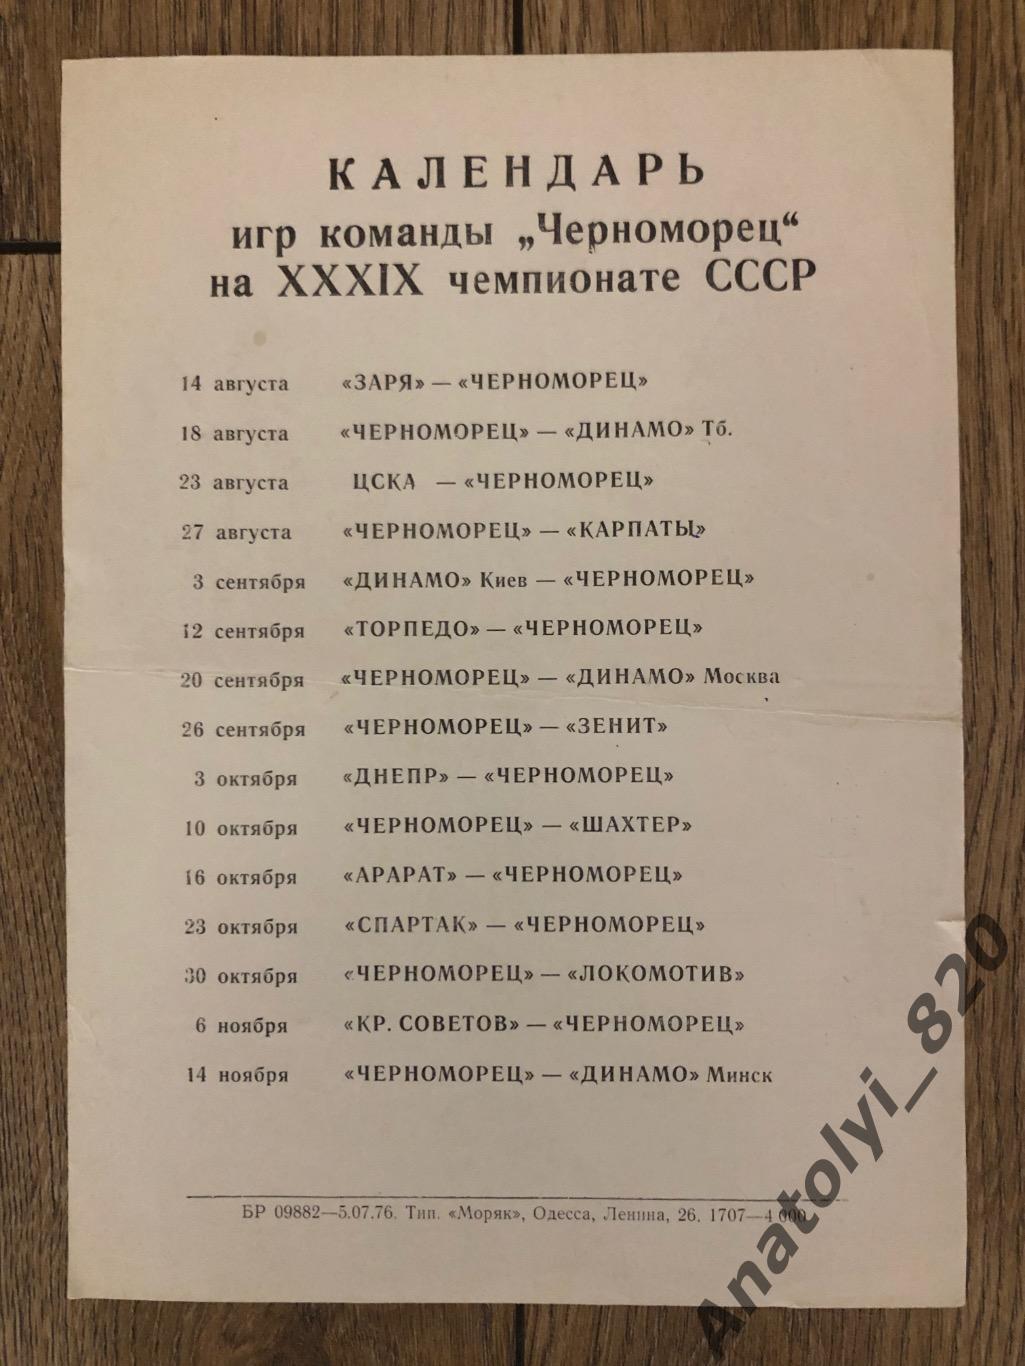 Черноморец Одесса календарь игр 1976 года